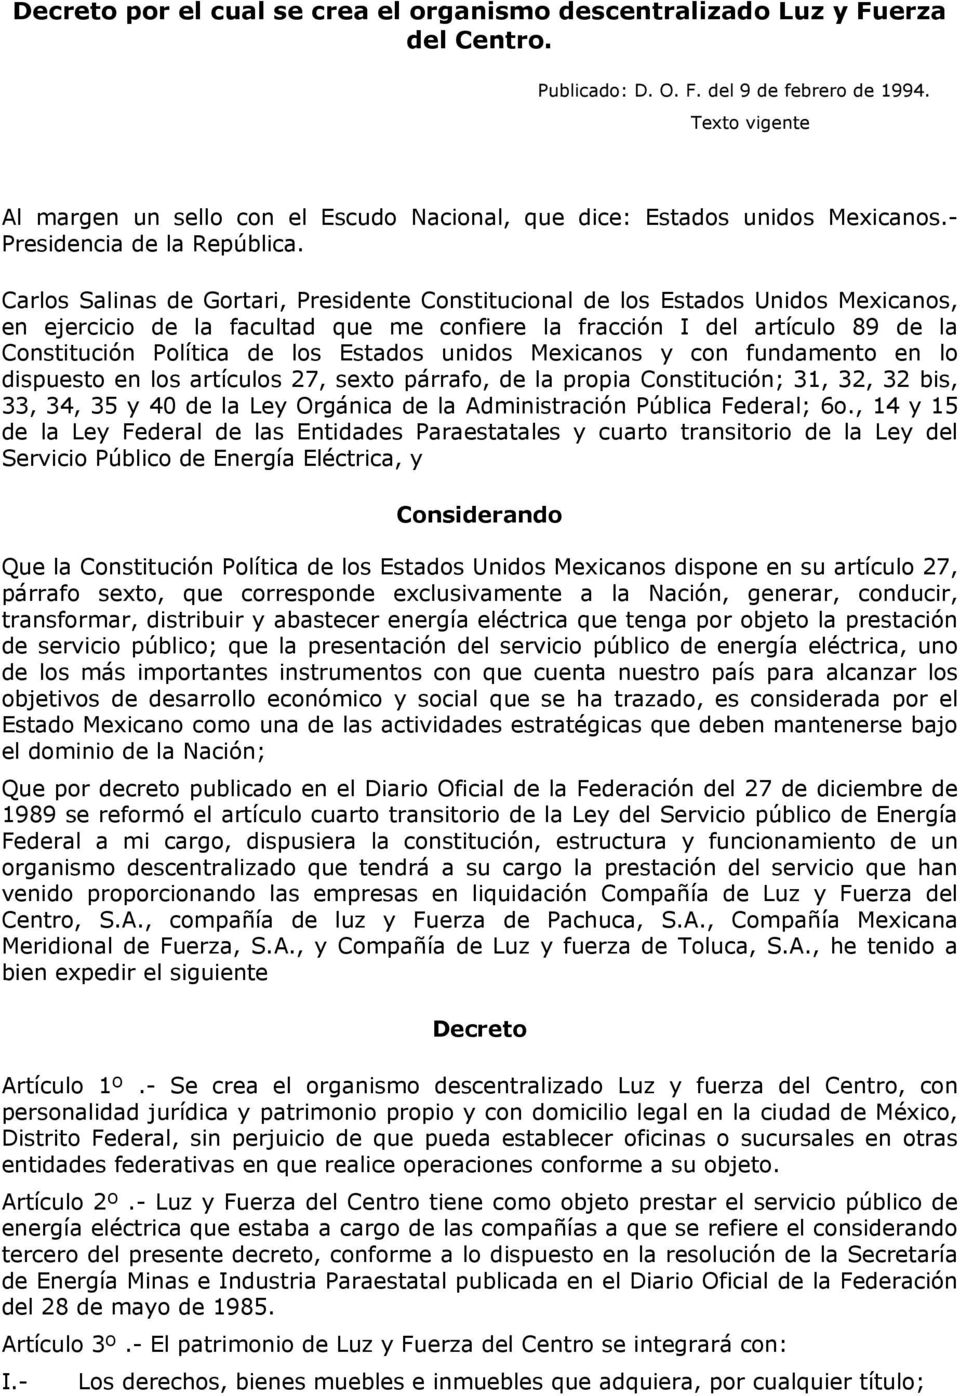 Carlos Salinas de Gortari, Presidente Constitucional de los Estados Unidos Mexicanos, en ejercicio de la facultad que me confiere la fracción I del artículo 89 de la Constitución Política de los